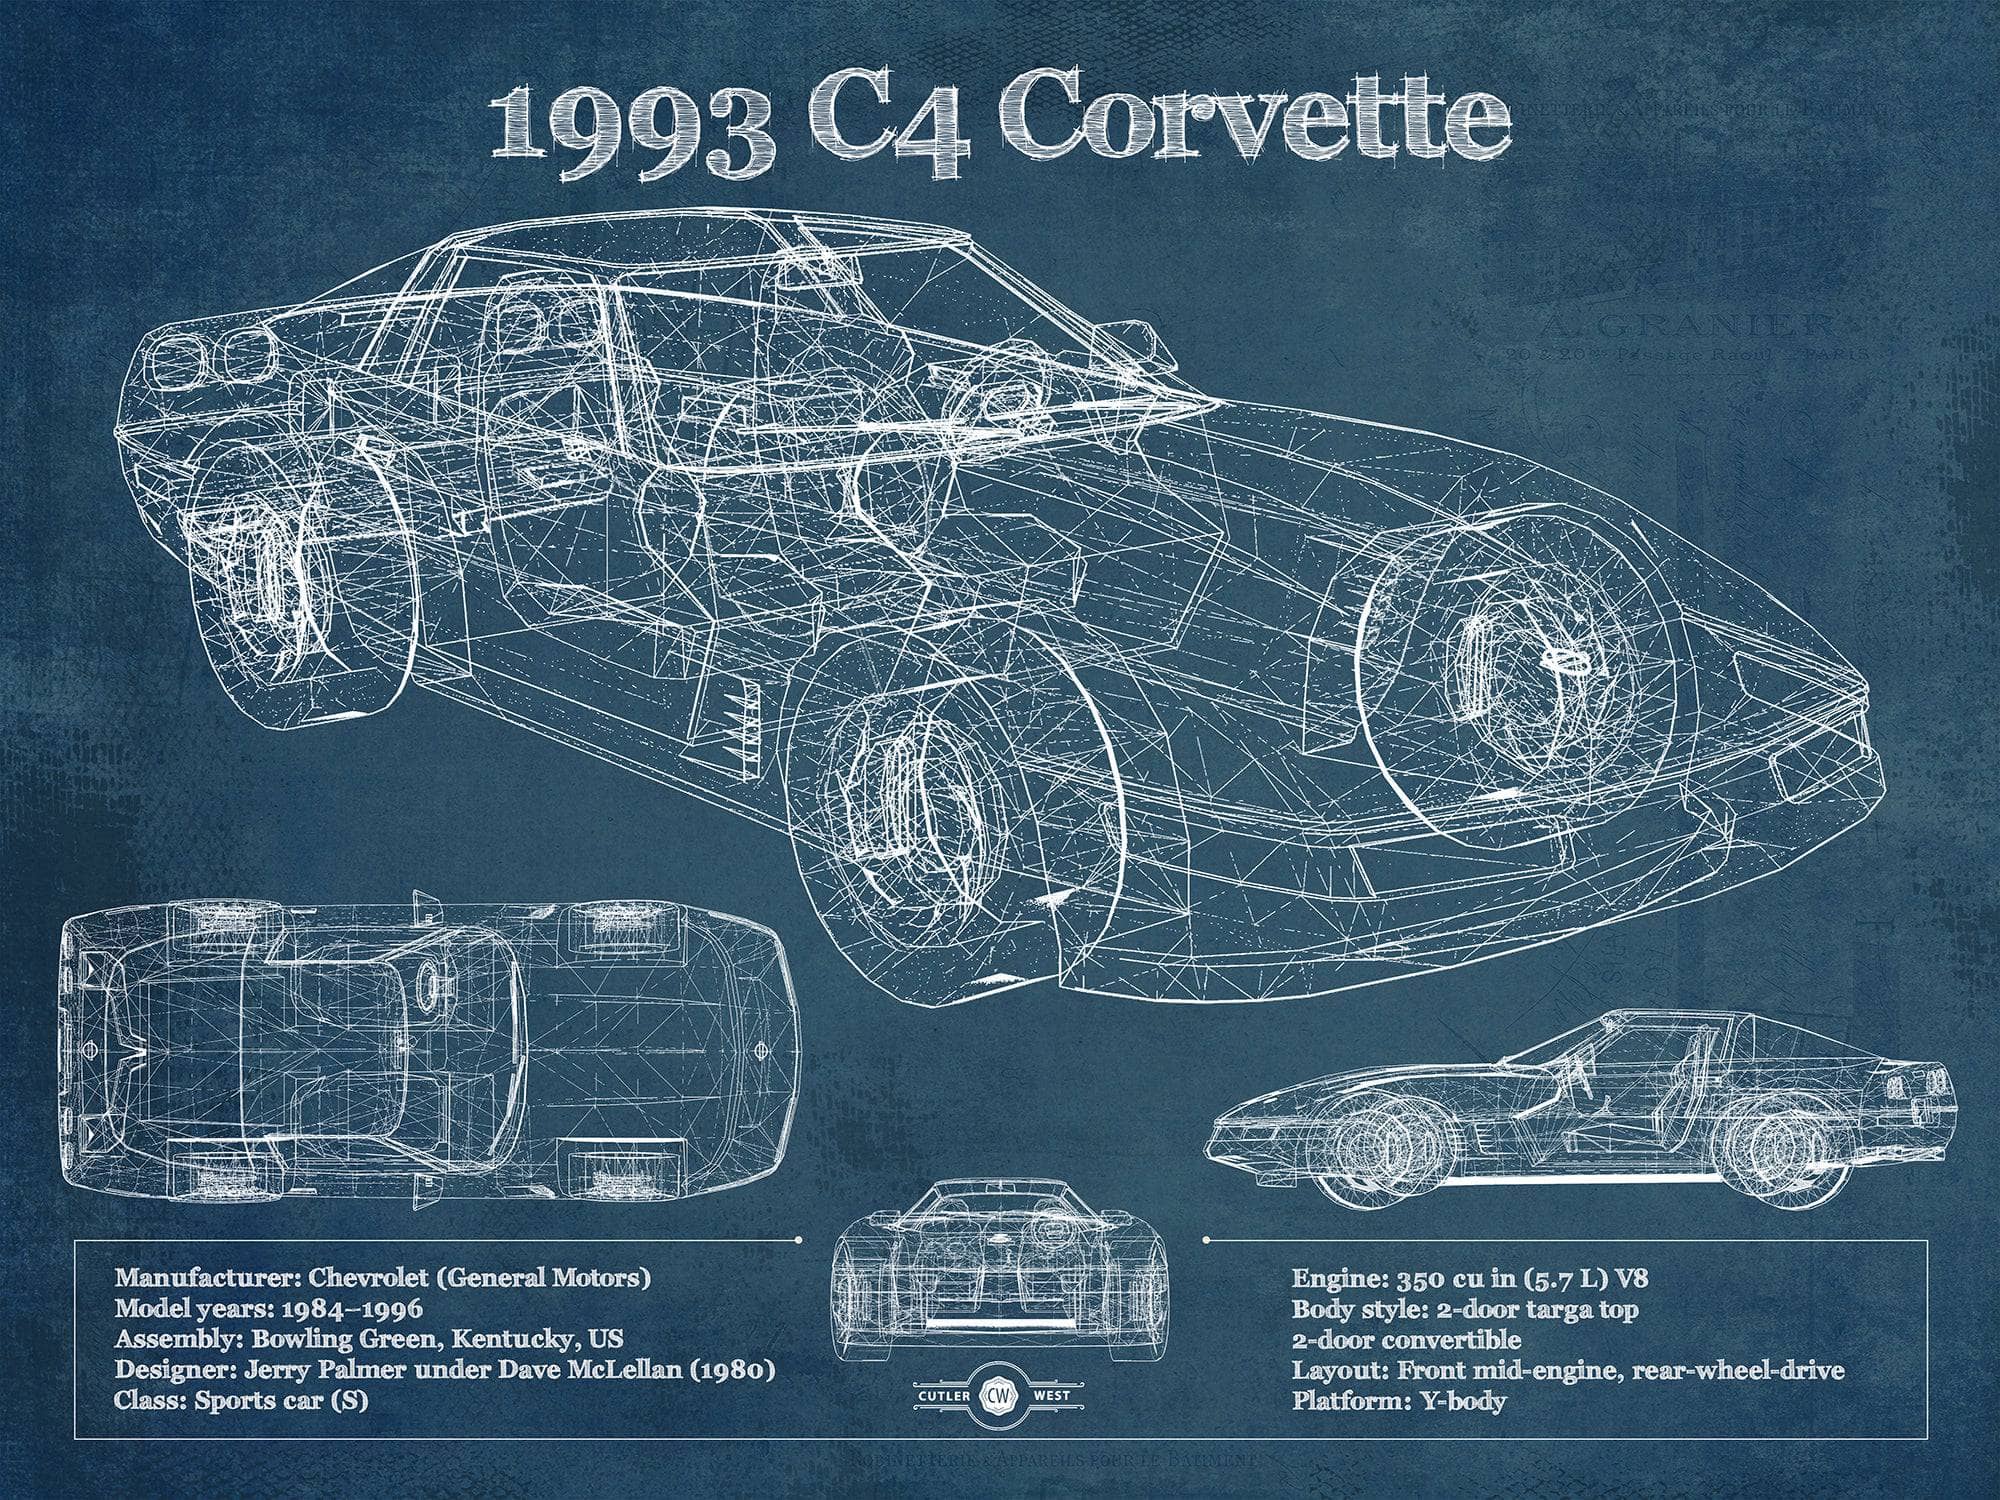 Cutler West Chevrolet Collection 1993 Chevrolet C4 Corvette Blueprint Vintage Auto Print